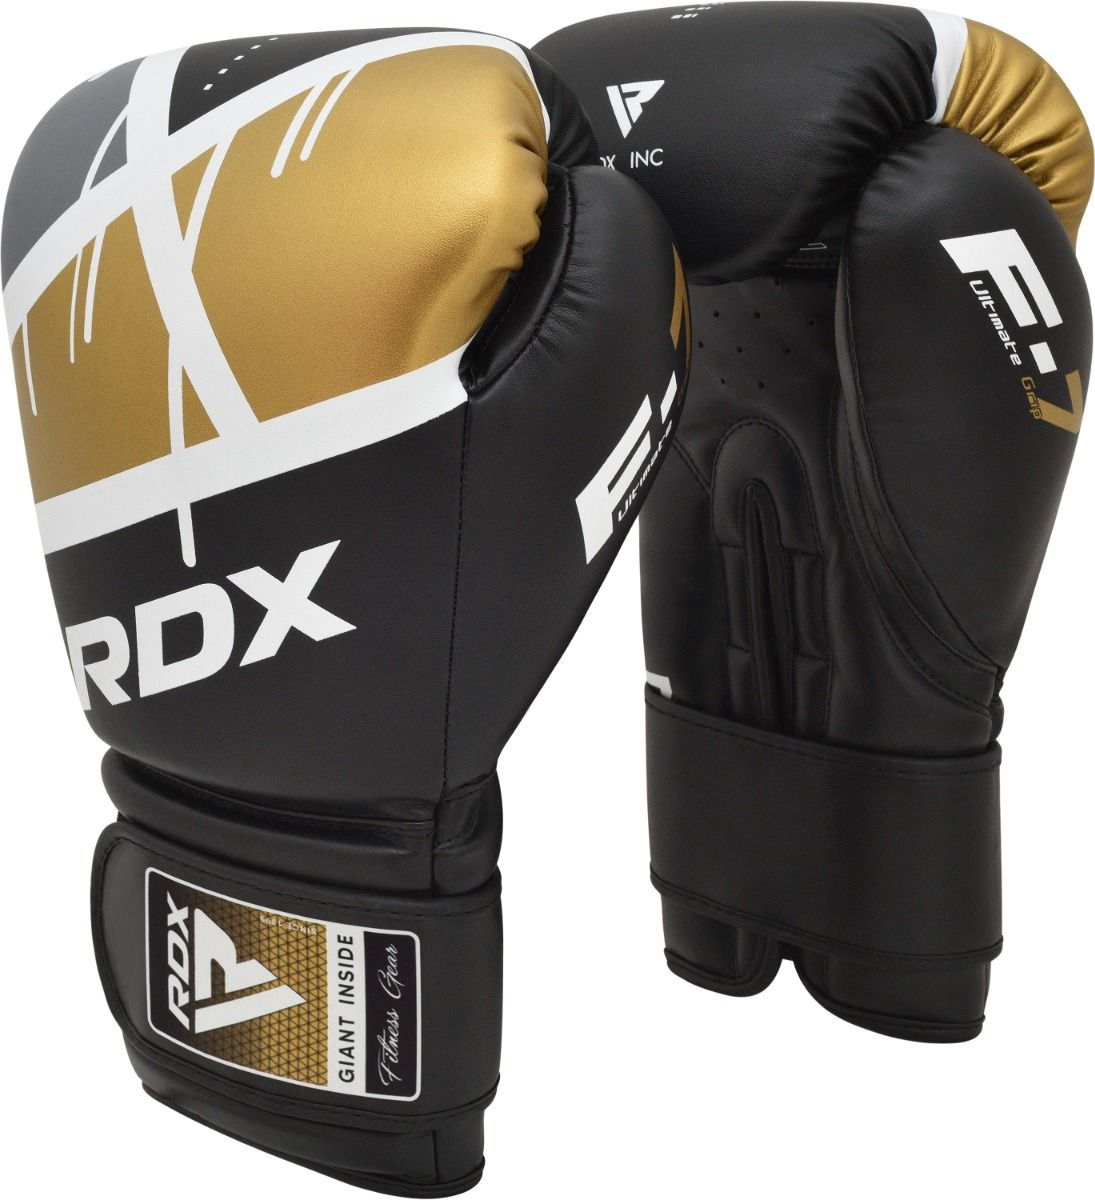 Boxerské rukavice RDX F7 black/golden vel. 8 oz